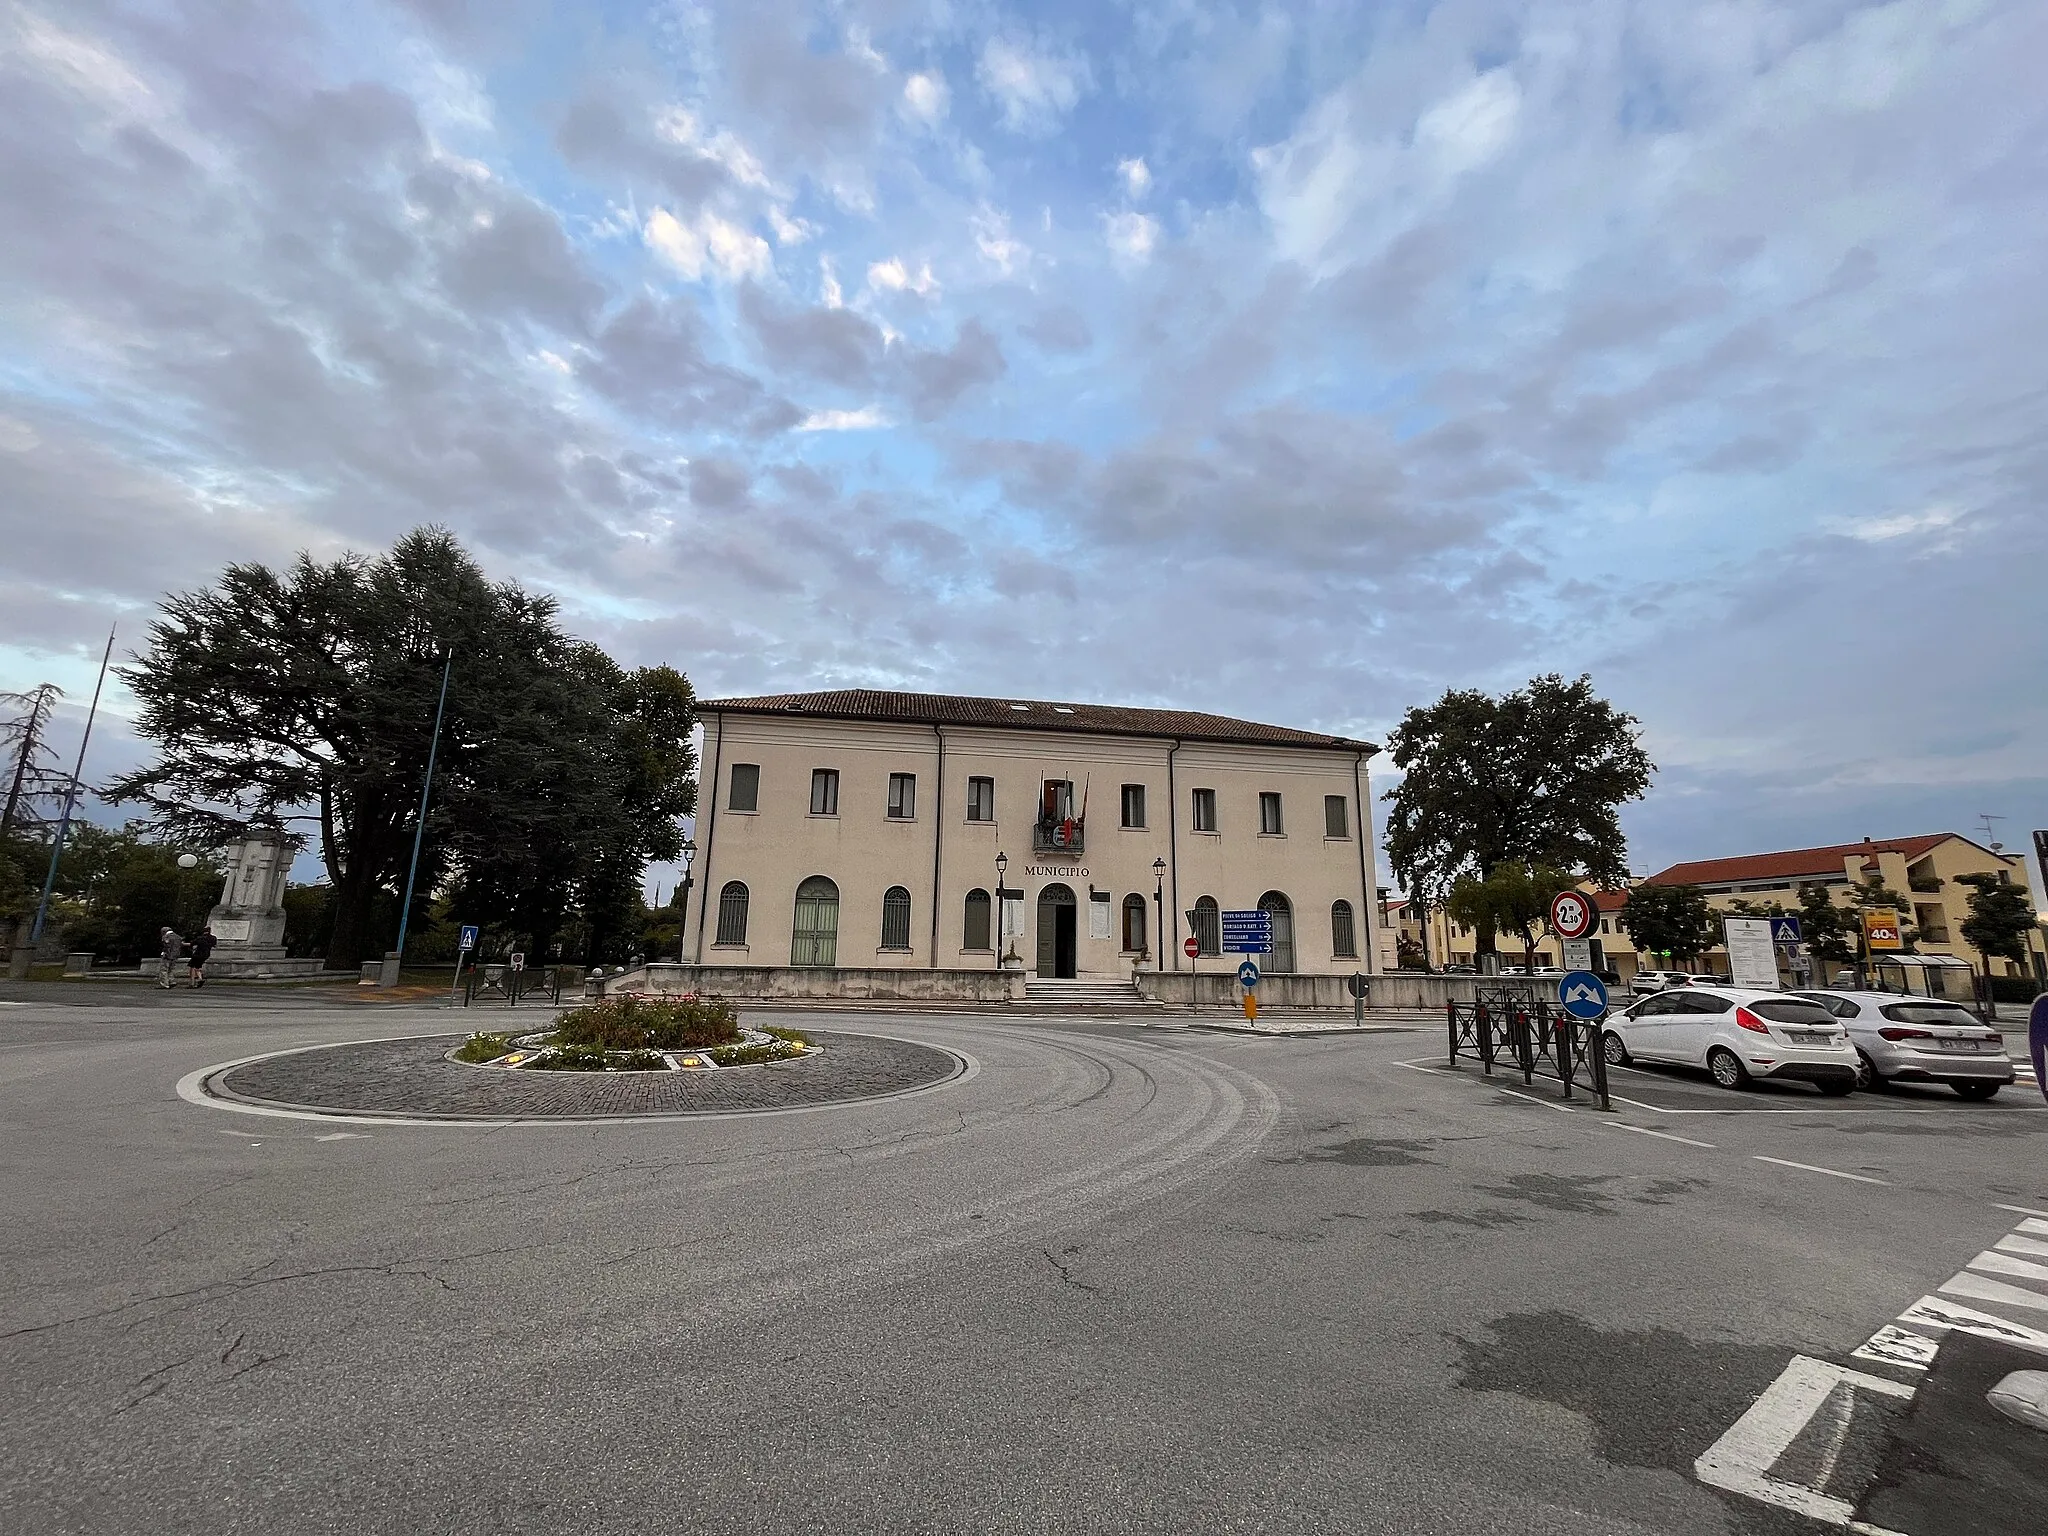 Photo showing: Municipio Sernaglia della Battaglia 2022